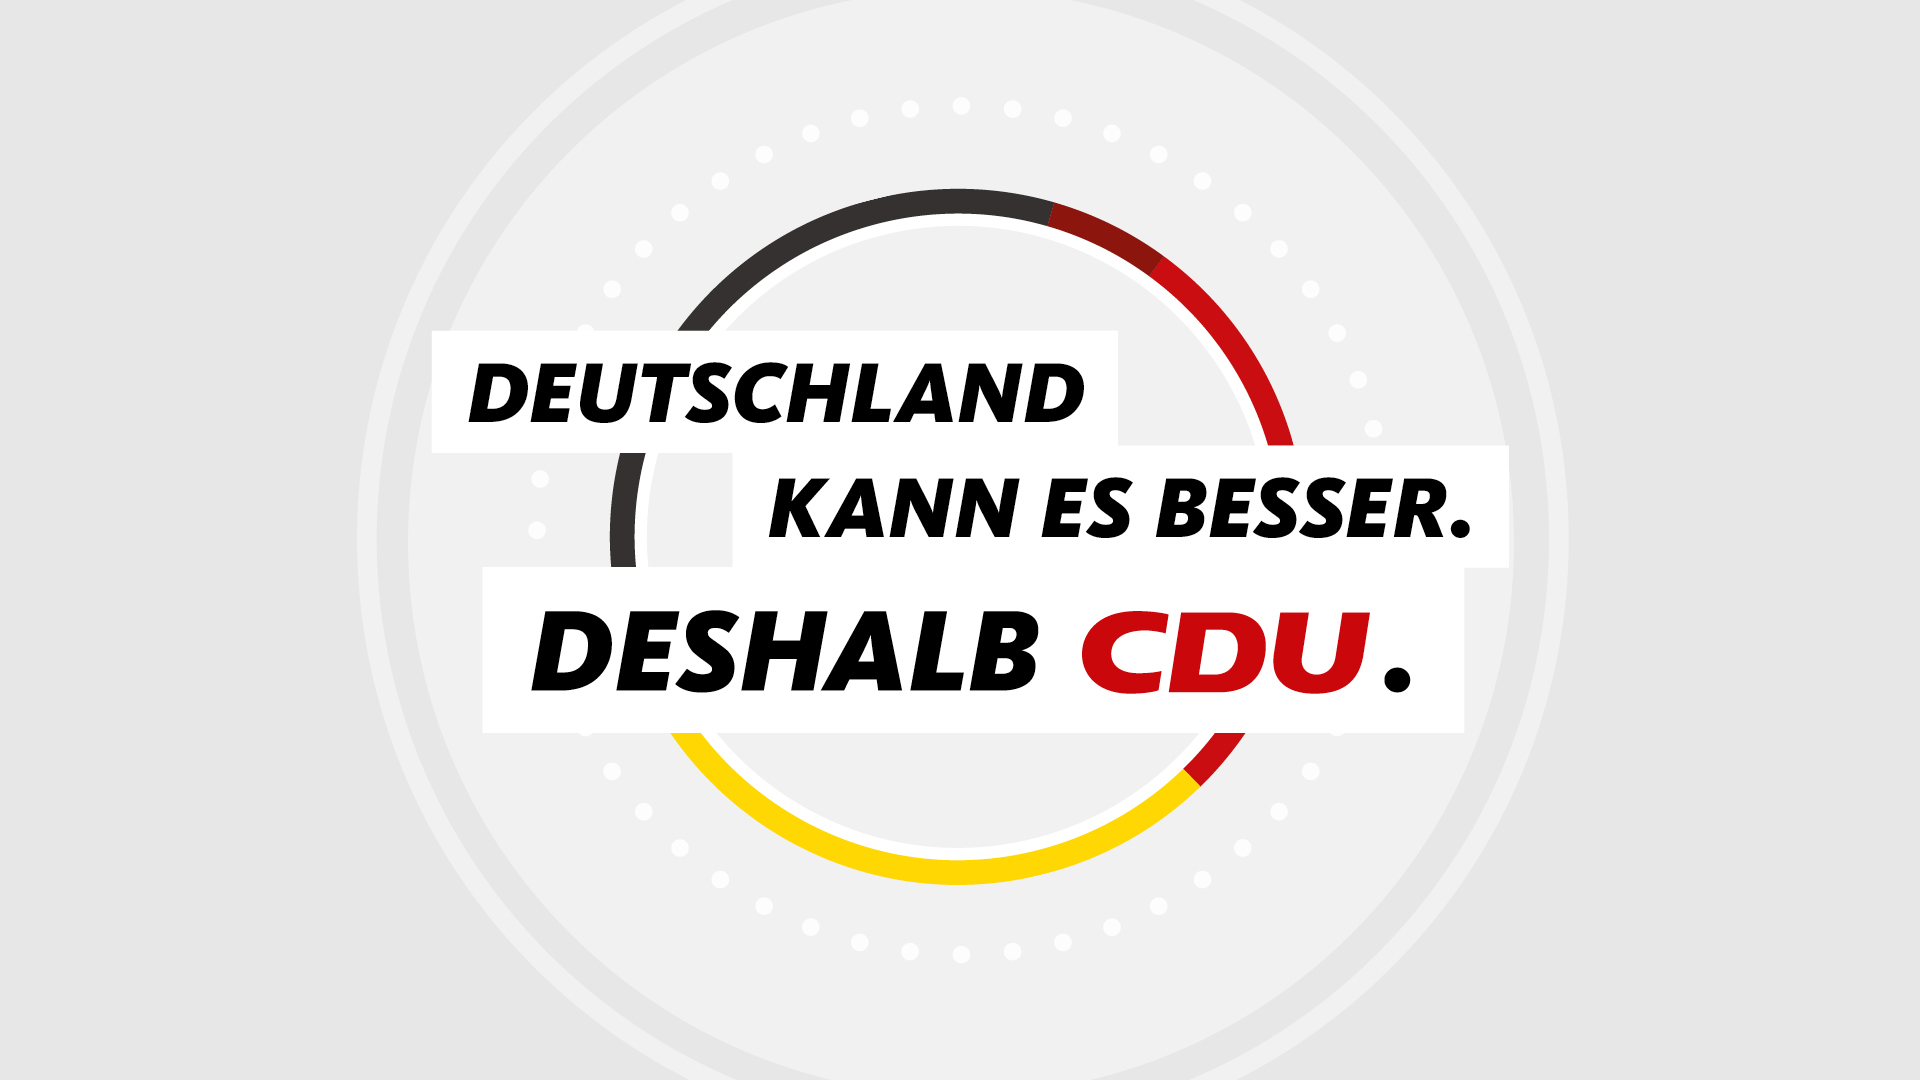 Die CDU kann es besser